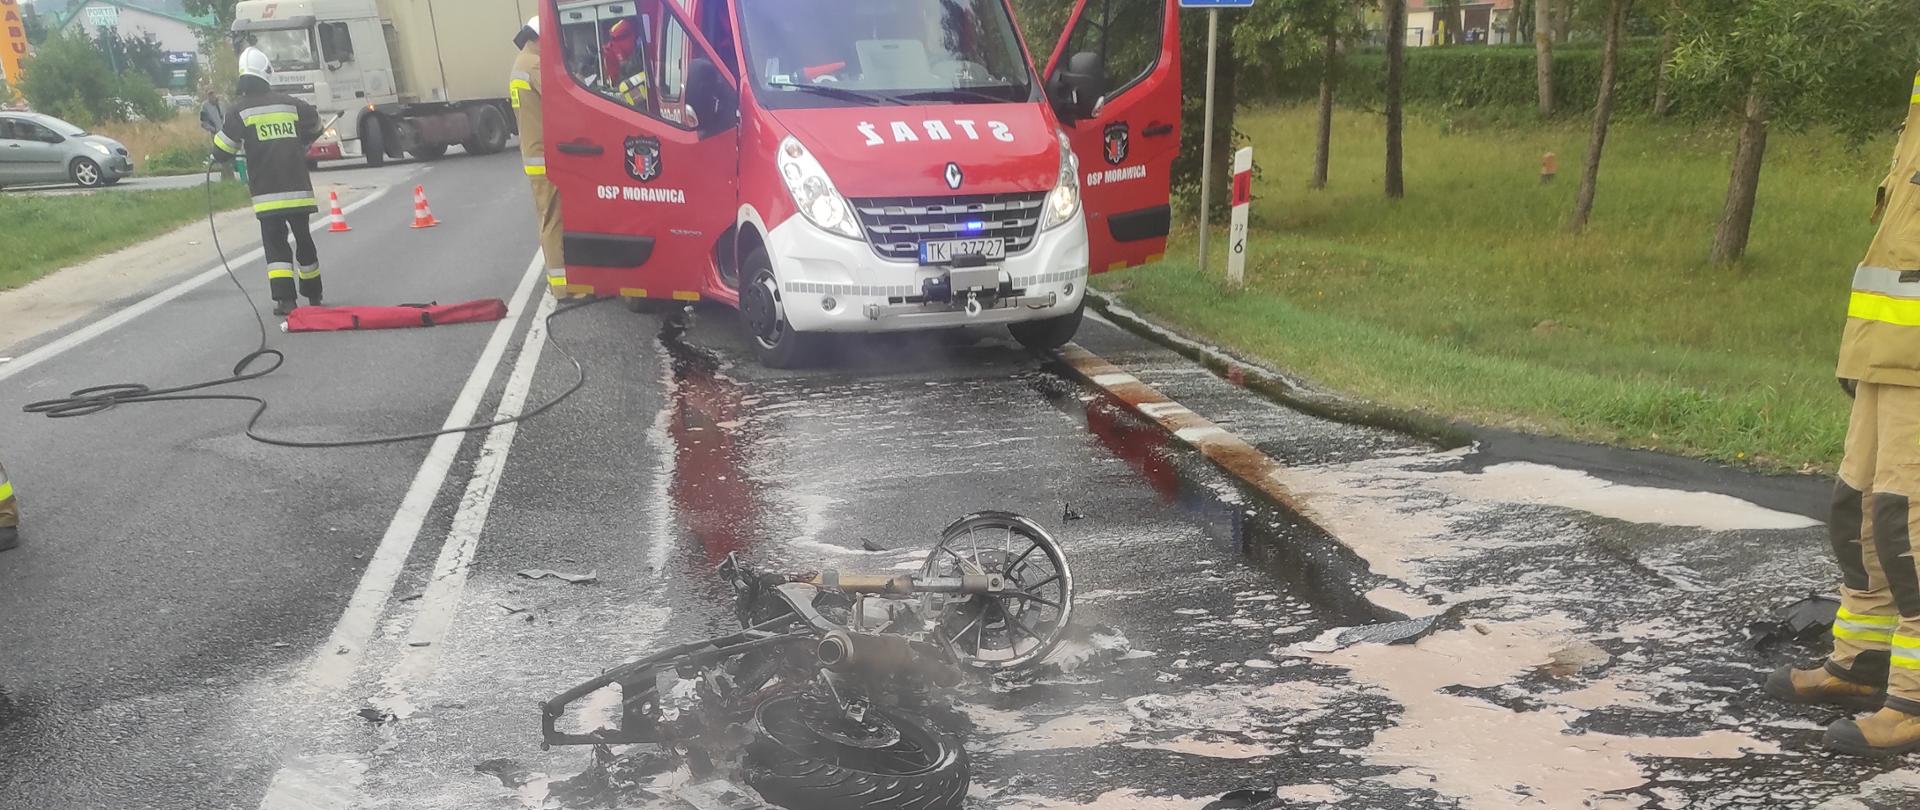 Zdjęcie przedstawia spalony motocykl na jezdni. Za nim wóz strażacki.